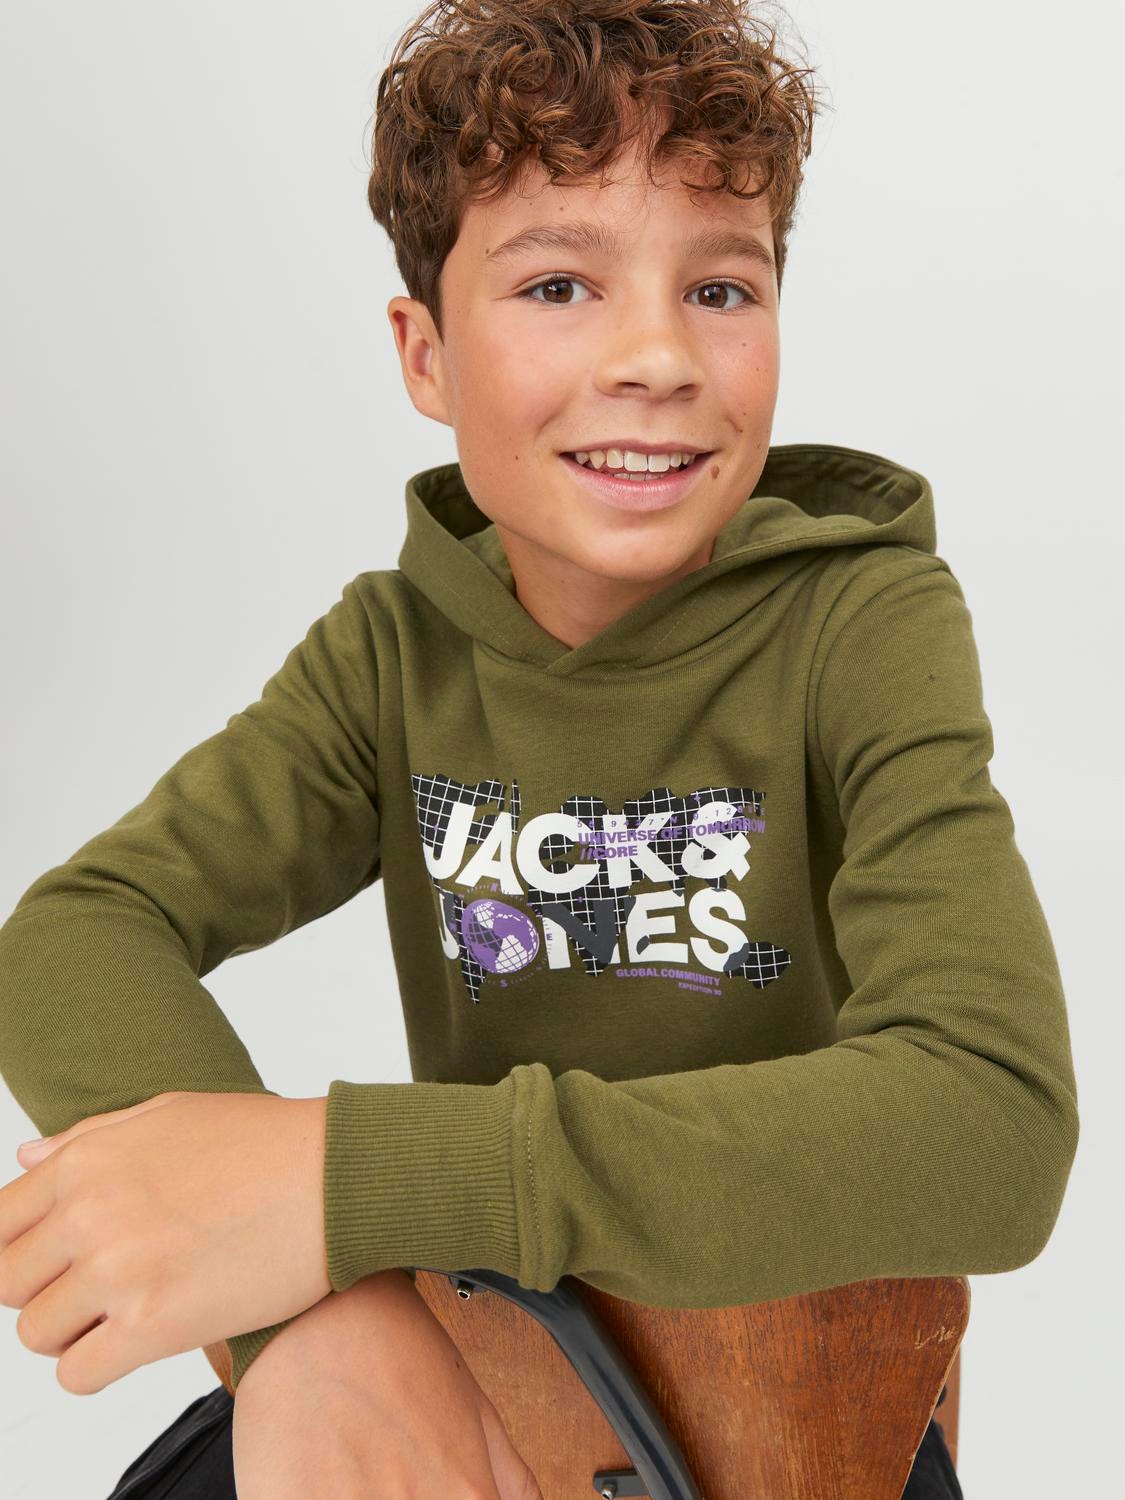 Jack & Jones Logo Hoodie Voor jongens -Olive Branch - 12241029